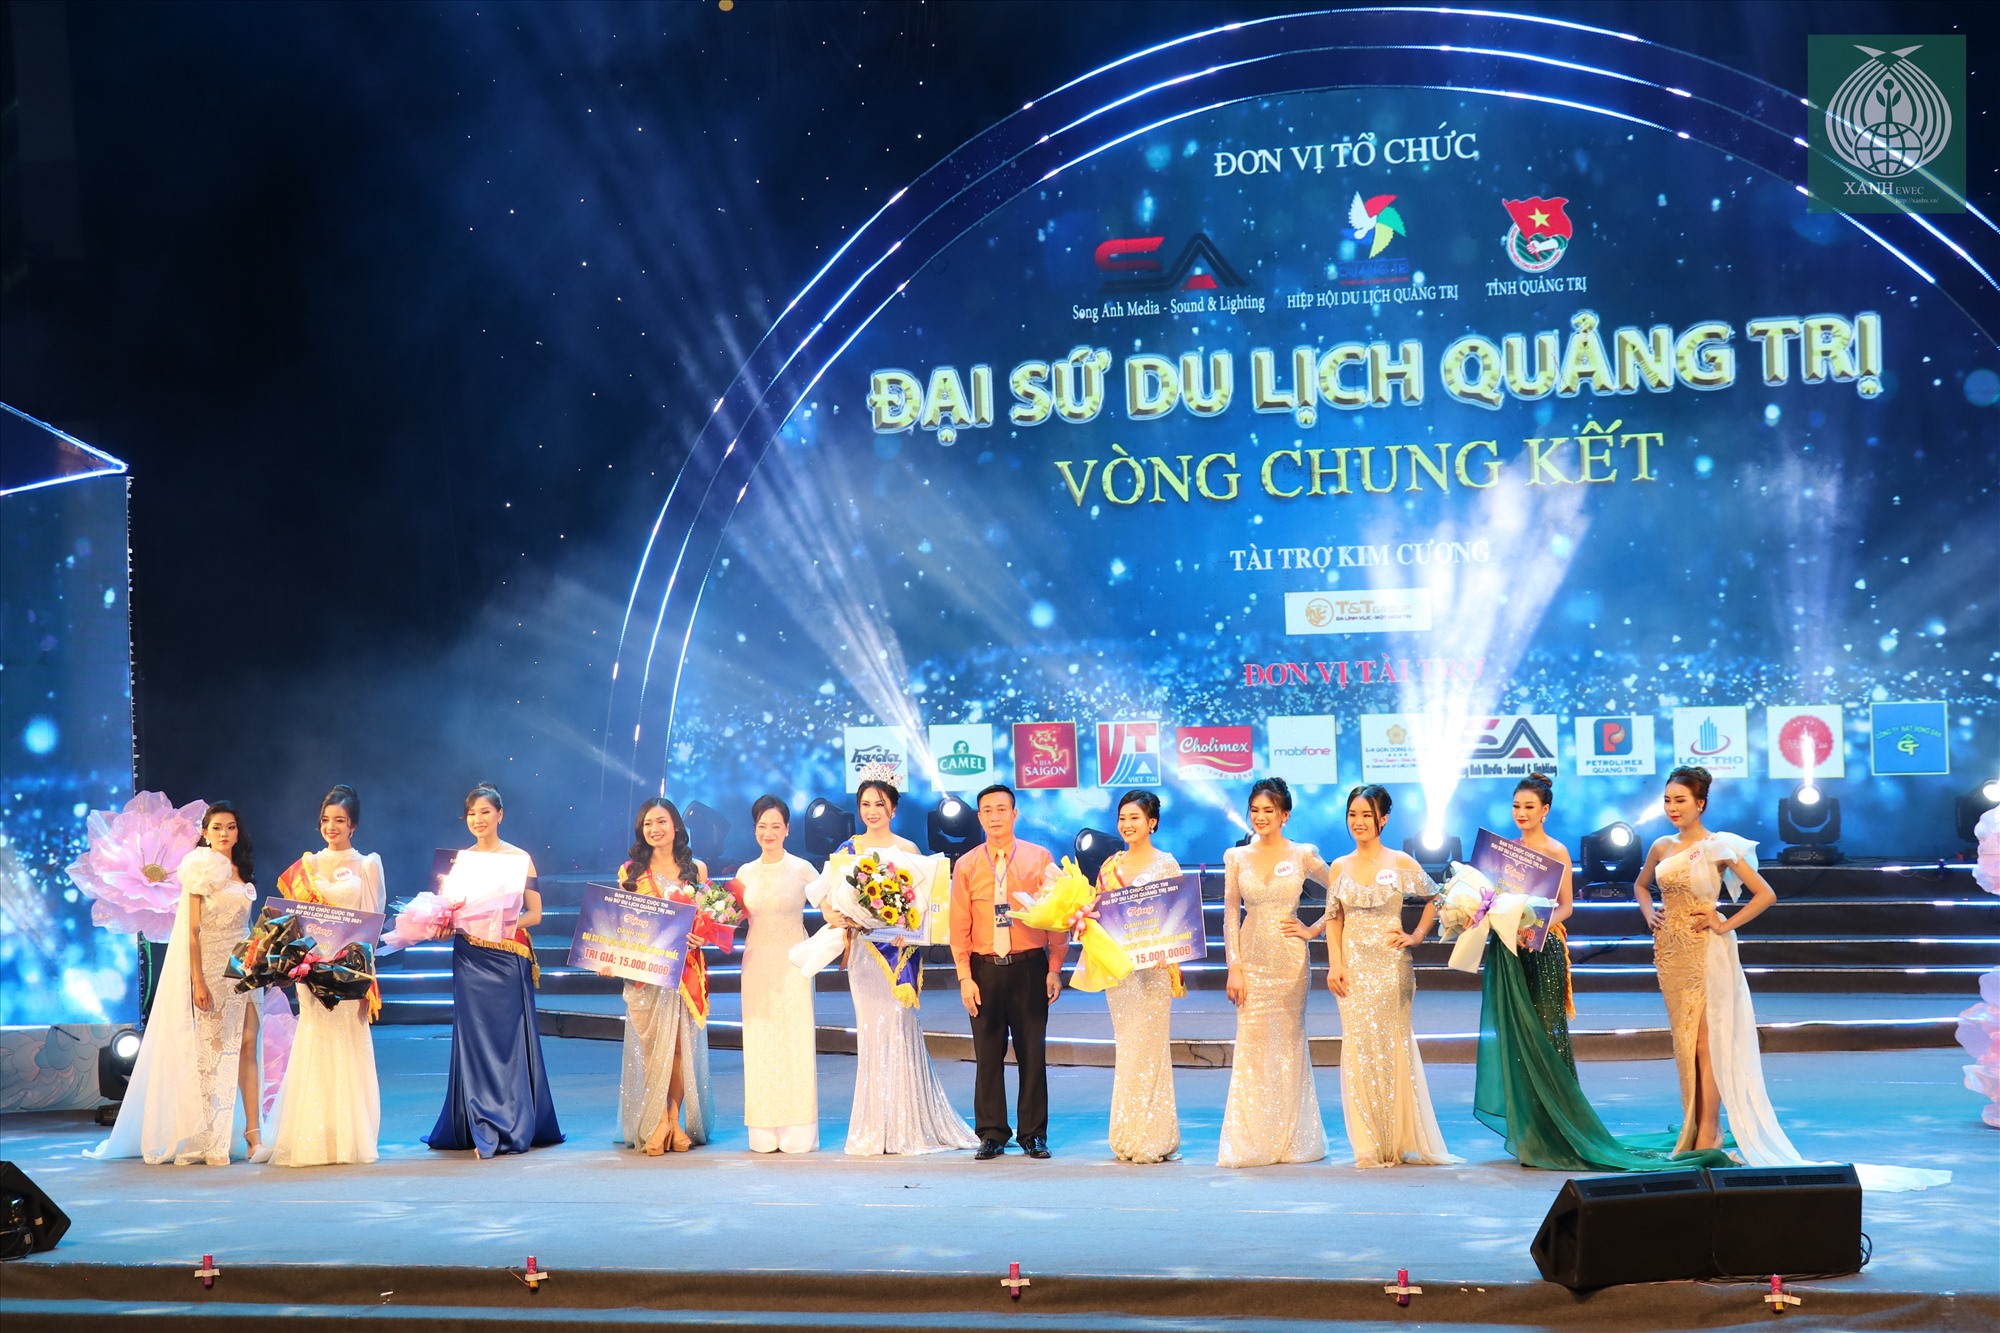 Chung kết cuộc thi “Đại sứ du lịch tỉnh Quảng Trị 2021” được diễn vào đêm 2/5/2021 tại Trung tâm Văn hóa – Điện ảnh tỉnh